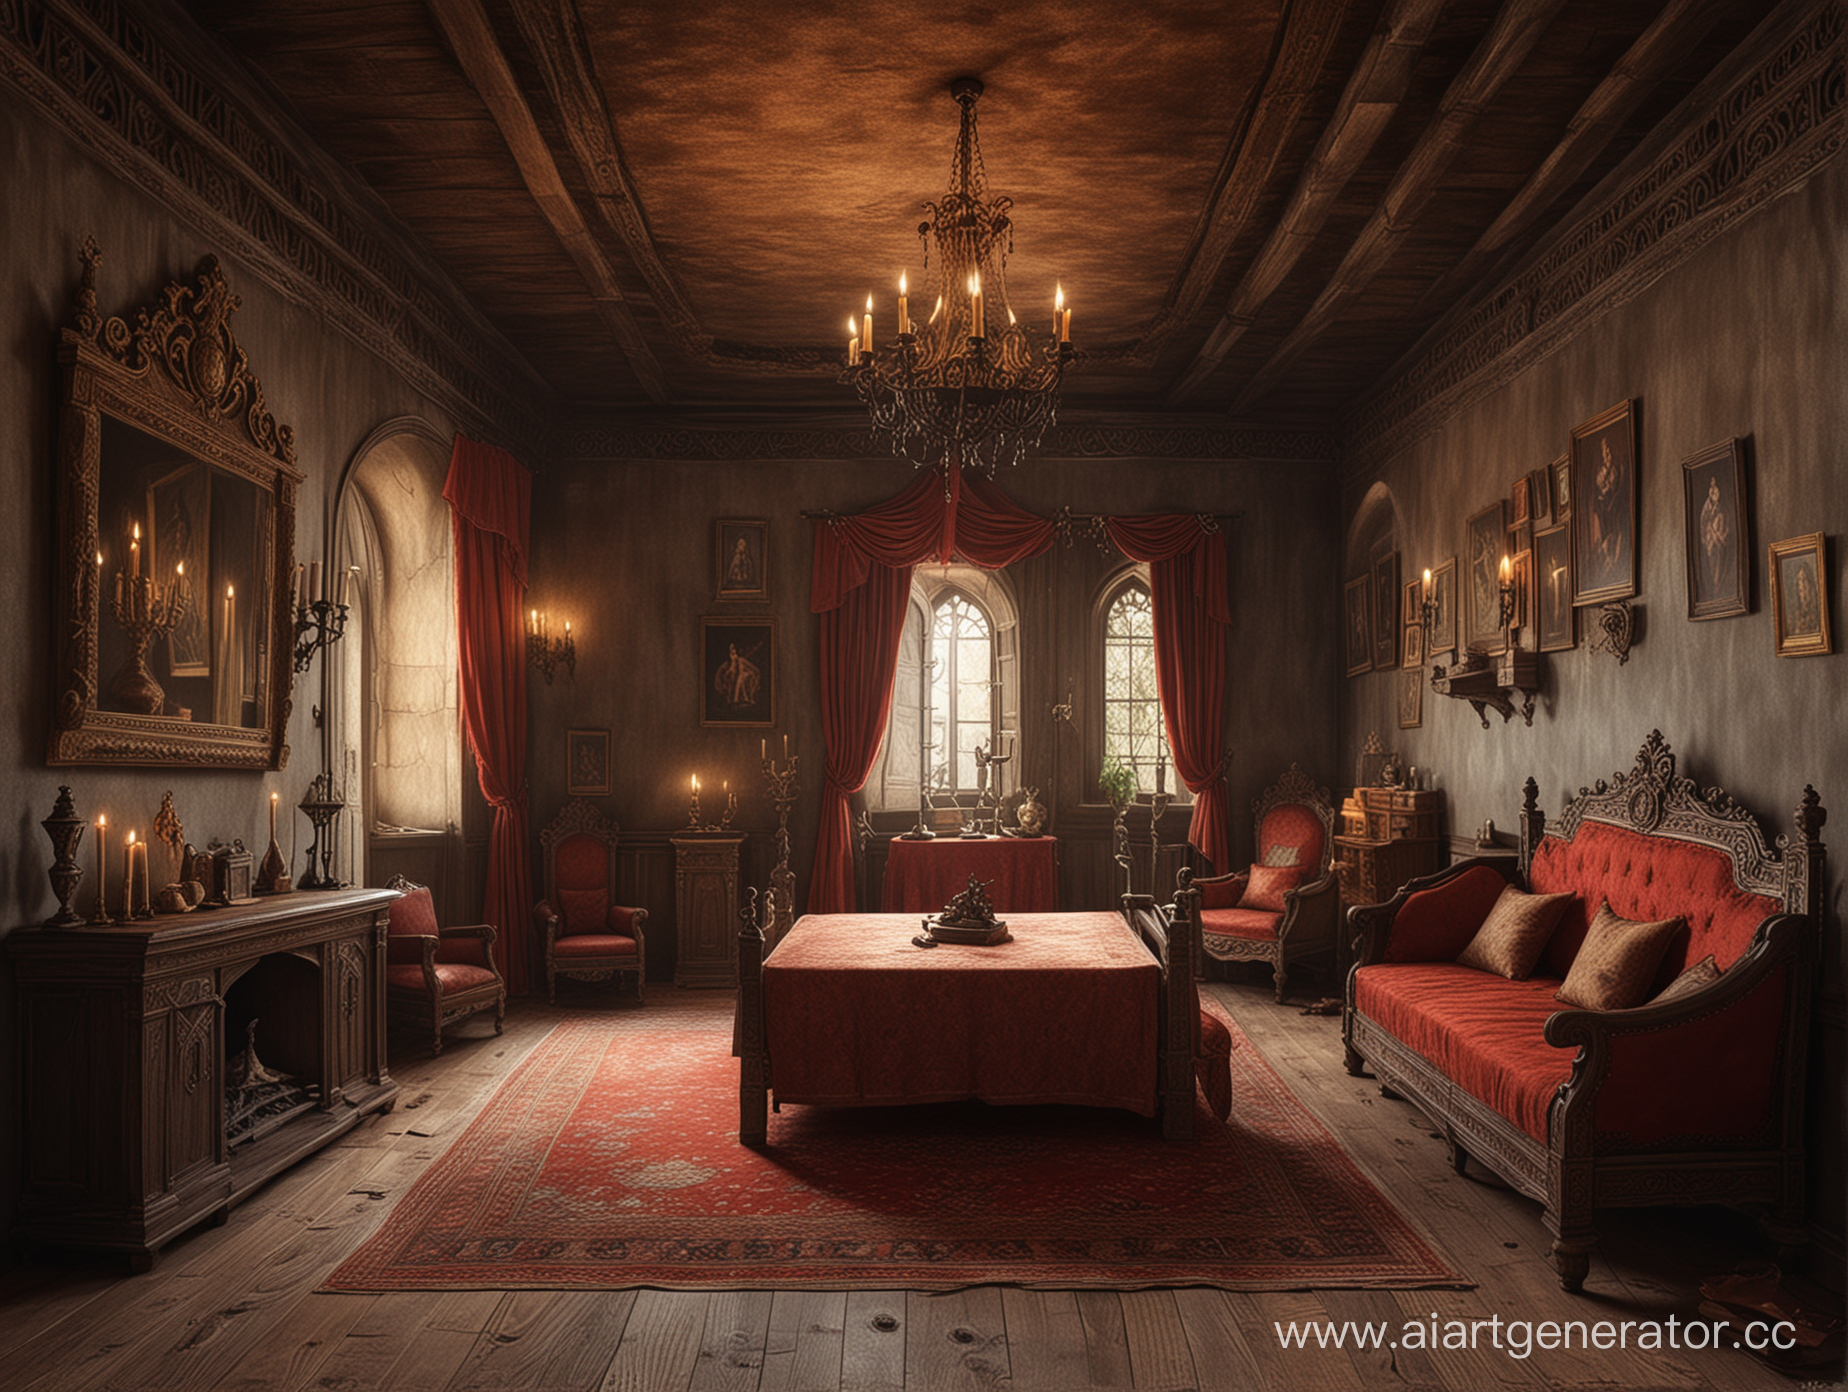 Нарисуй мне королевскую комнату из ада в стиле средневековья
